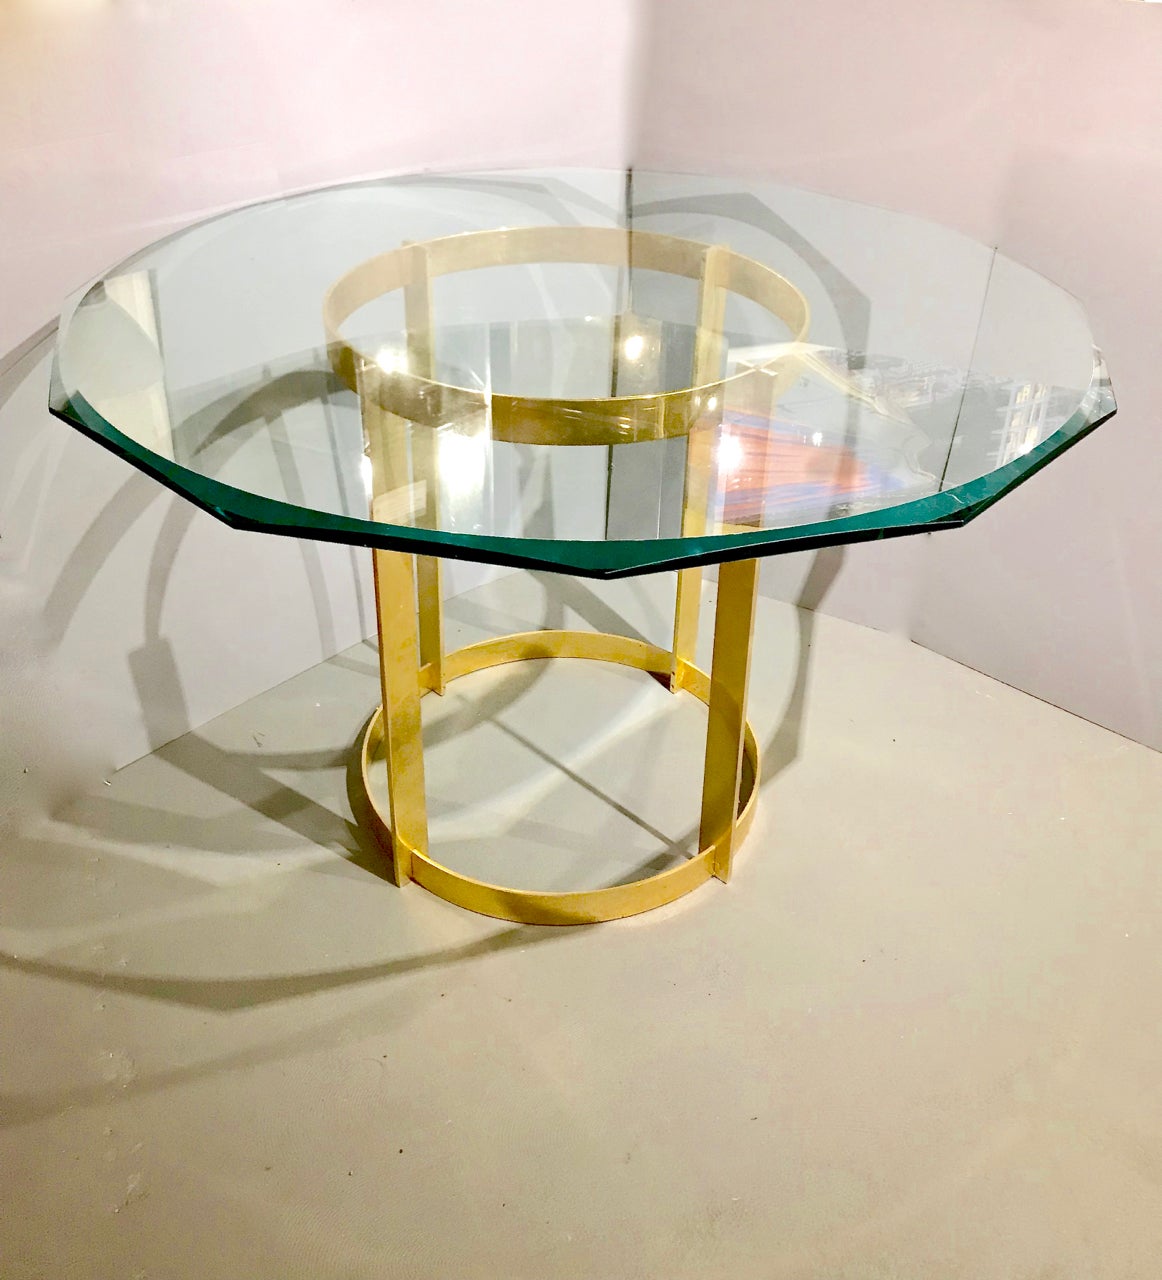 Il s'agit d'une superbe table de centre ou de salle à manger en bronze doré et en verre, attribuée au style de Fontana Arte et datant des années 1980. Le design linéaire minimal de la base en bronze doré permet à la table de s'intégrer parfaitement